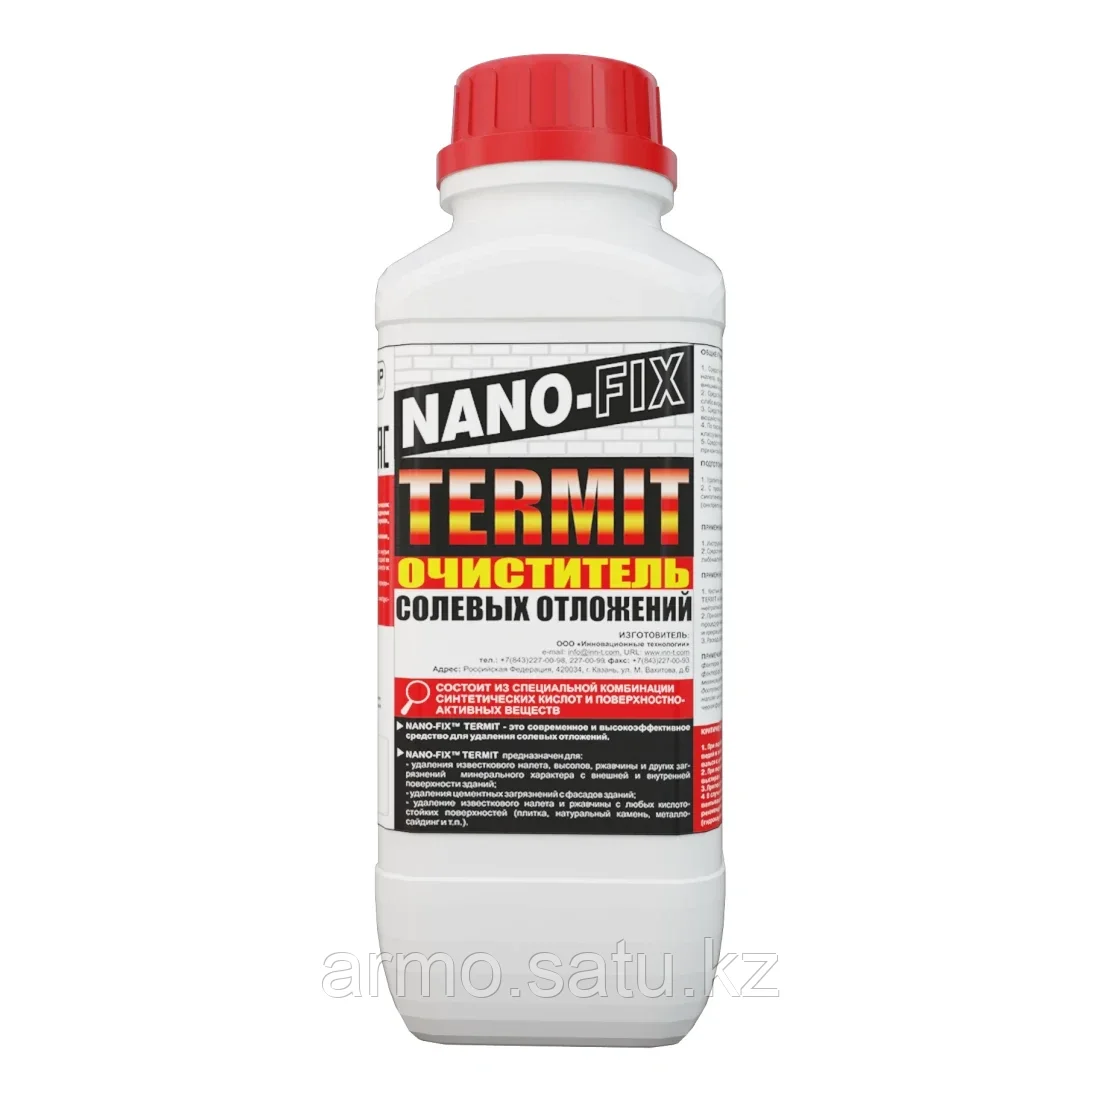 NANO-FIX™ TERMIT - очиститель солевых отложений